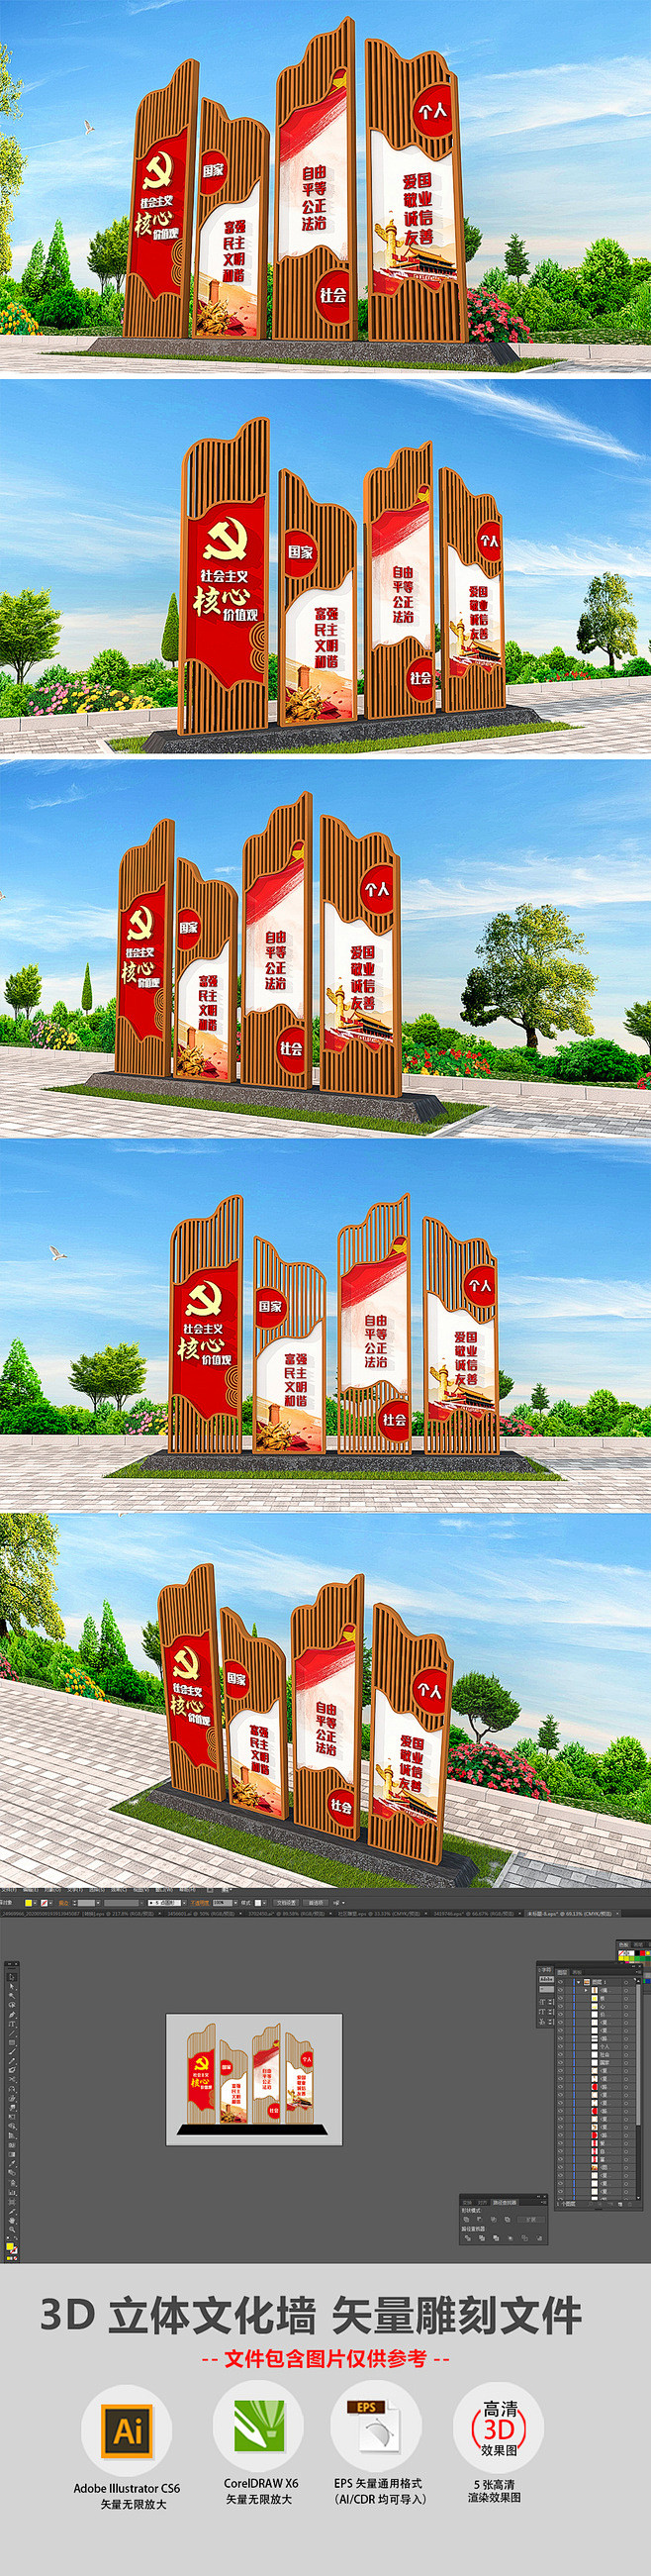 3D中式社会主义核心价值观户外公园精神堡...